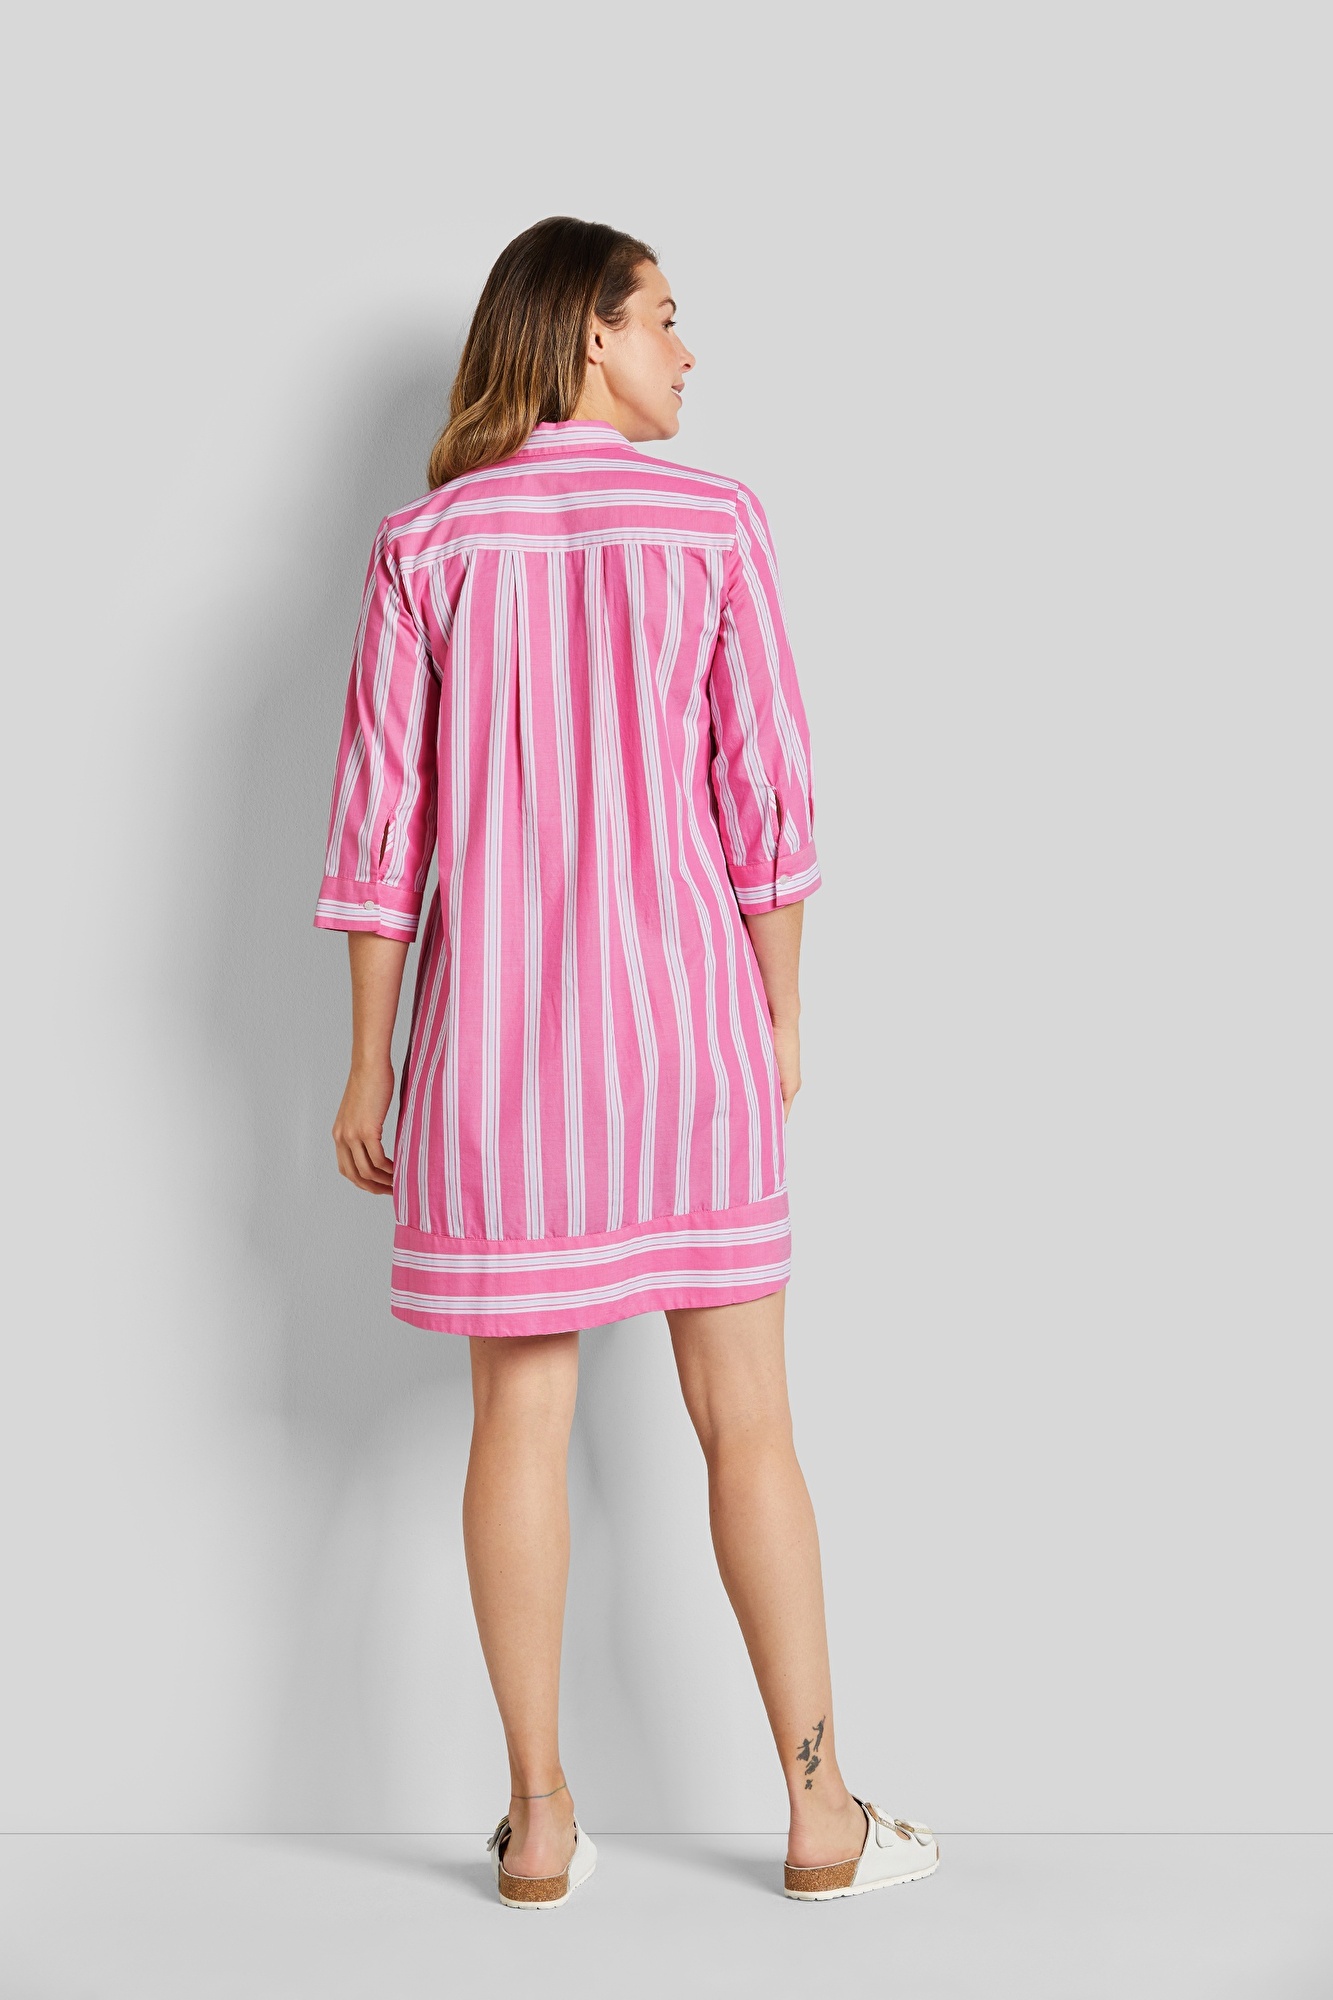 Blusenkleid mit moderner Streifenoptik in pink | bugatti